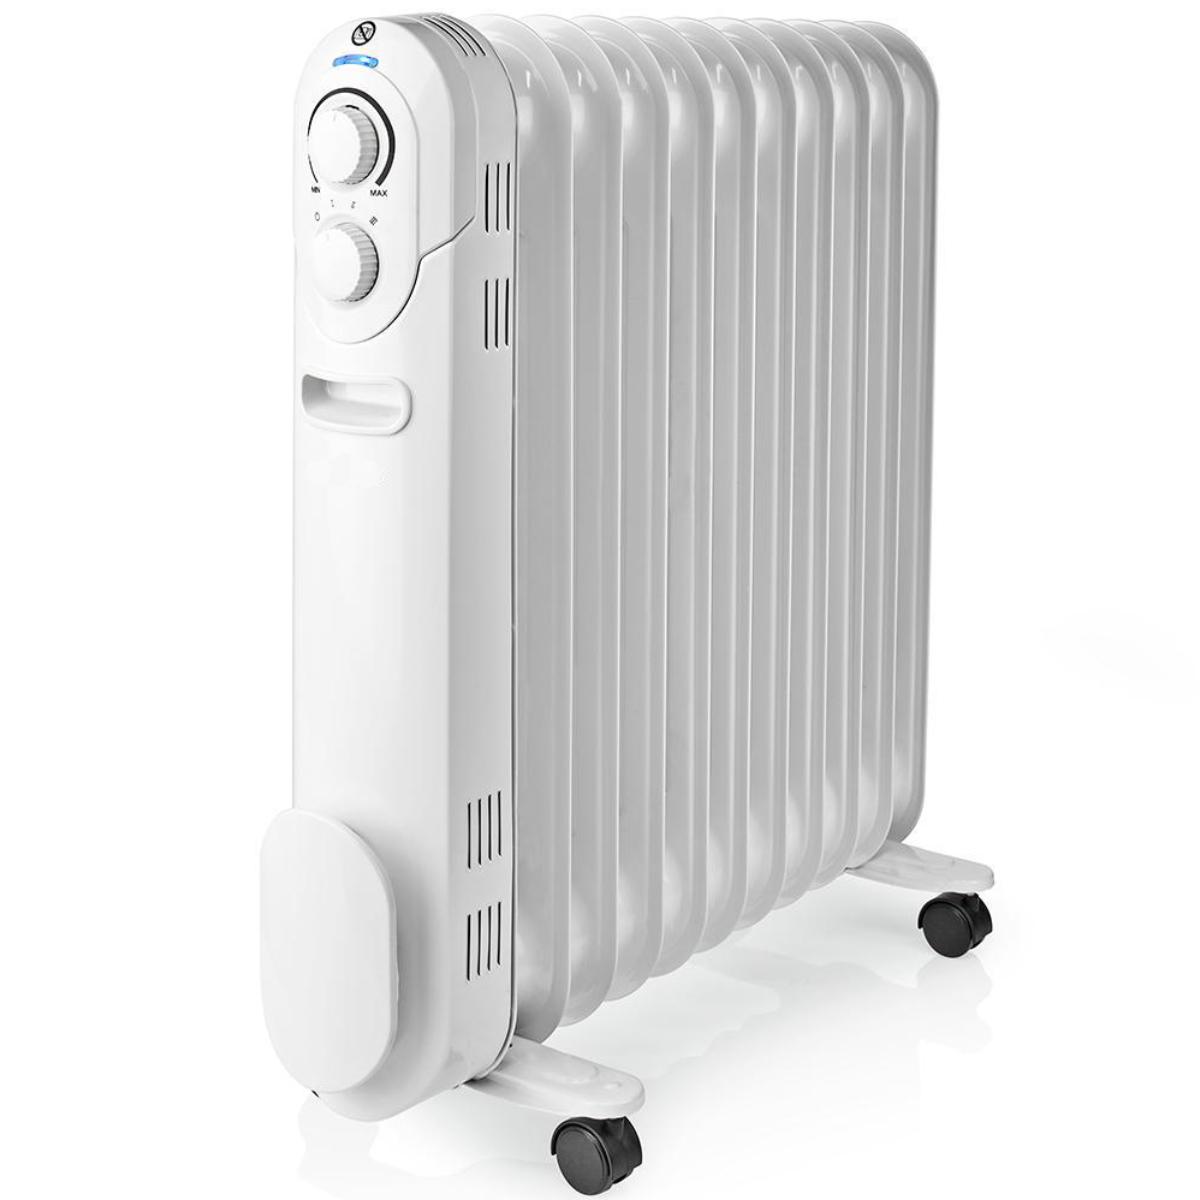 Elektrische - Oliegevulde mobiele radiator die een aanvullende en comfortabele warmtebron vormt die zowel stil als efficiënt is. De radiator voorzien van en een thermostaat om de gewenste